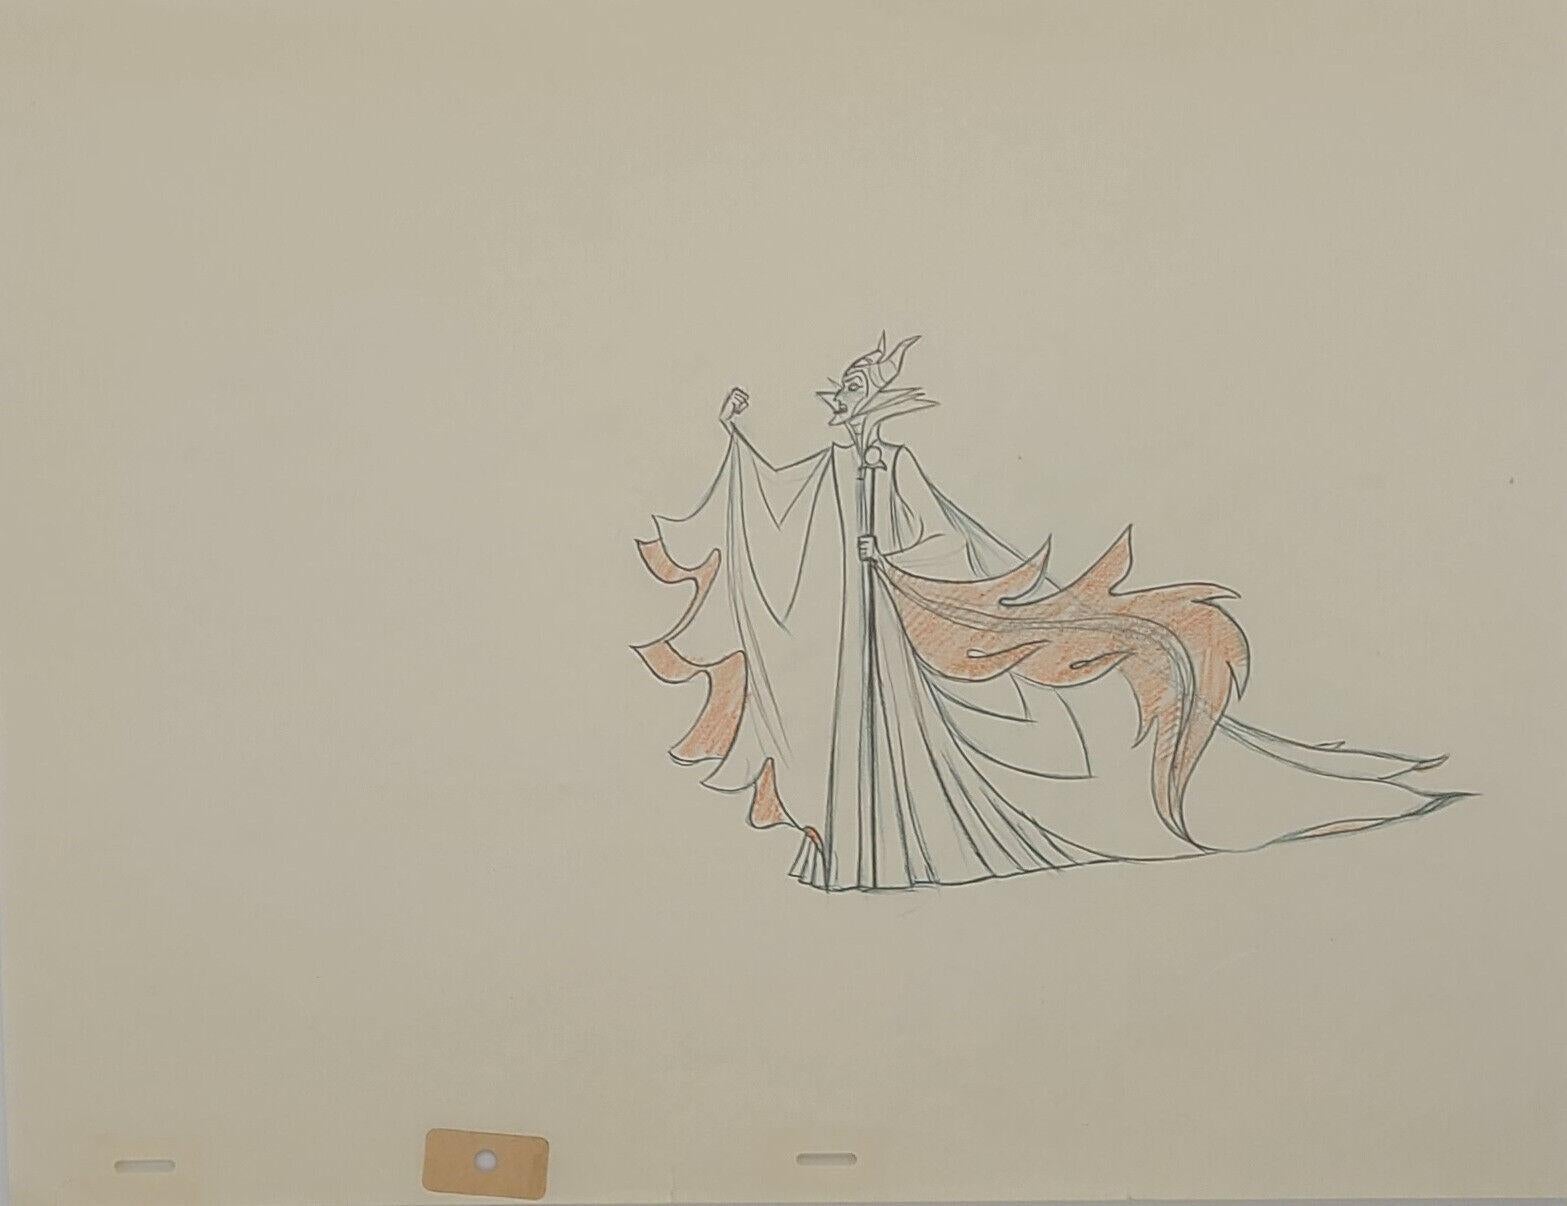 Original-Produktionszeichnung „Sleeping Beauty“: Maleficent – Art von Walt Disney Studio Artists